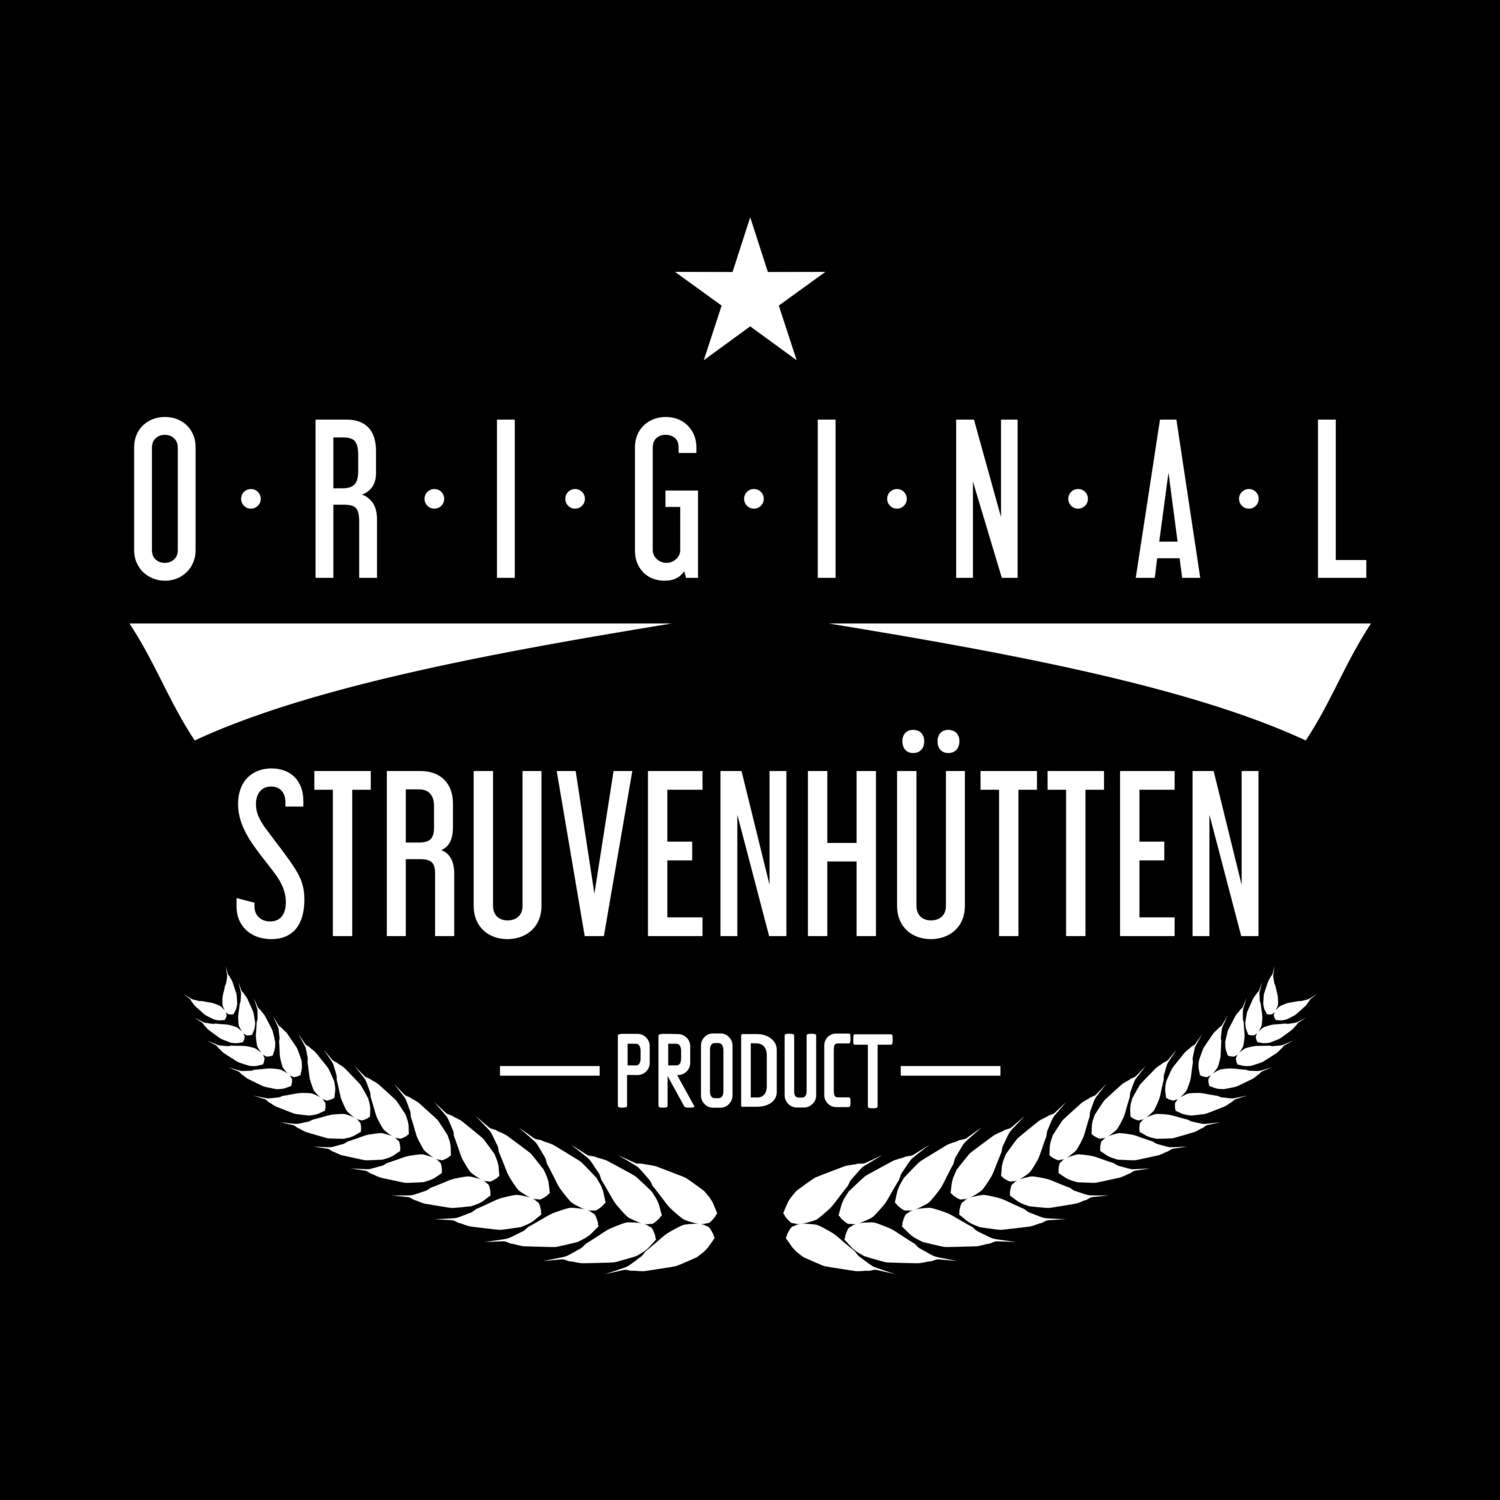 Struvenhütten T-Shirt »Original Product«